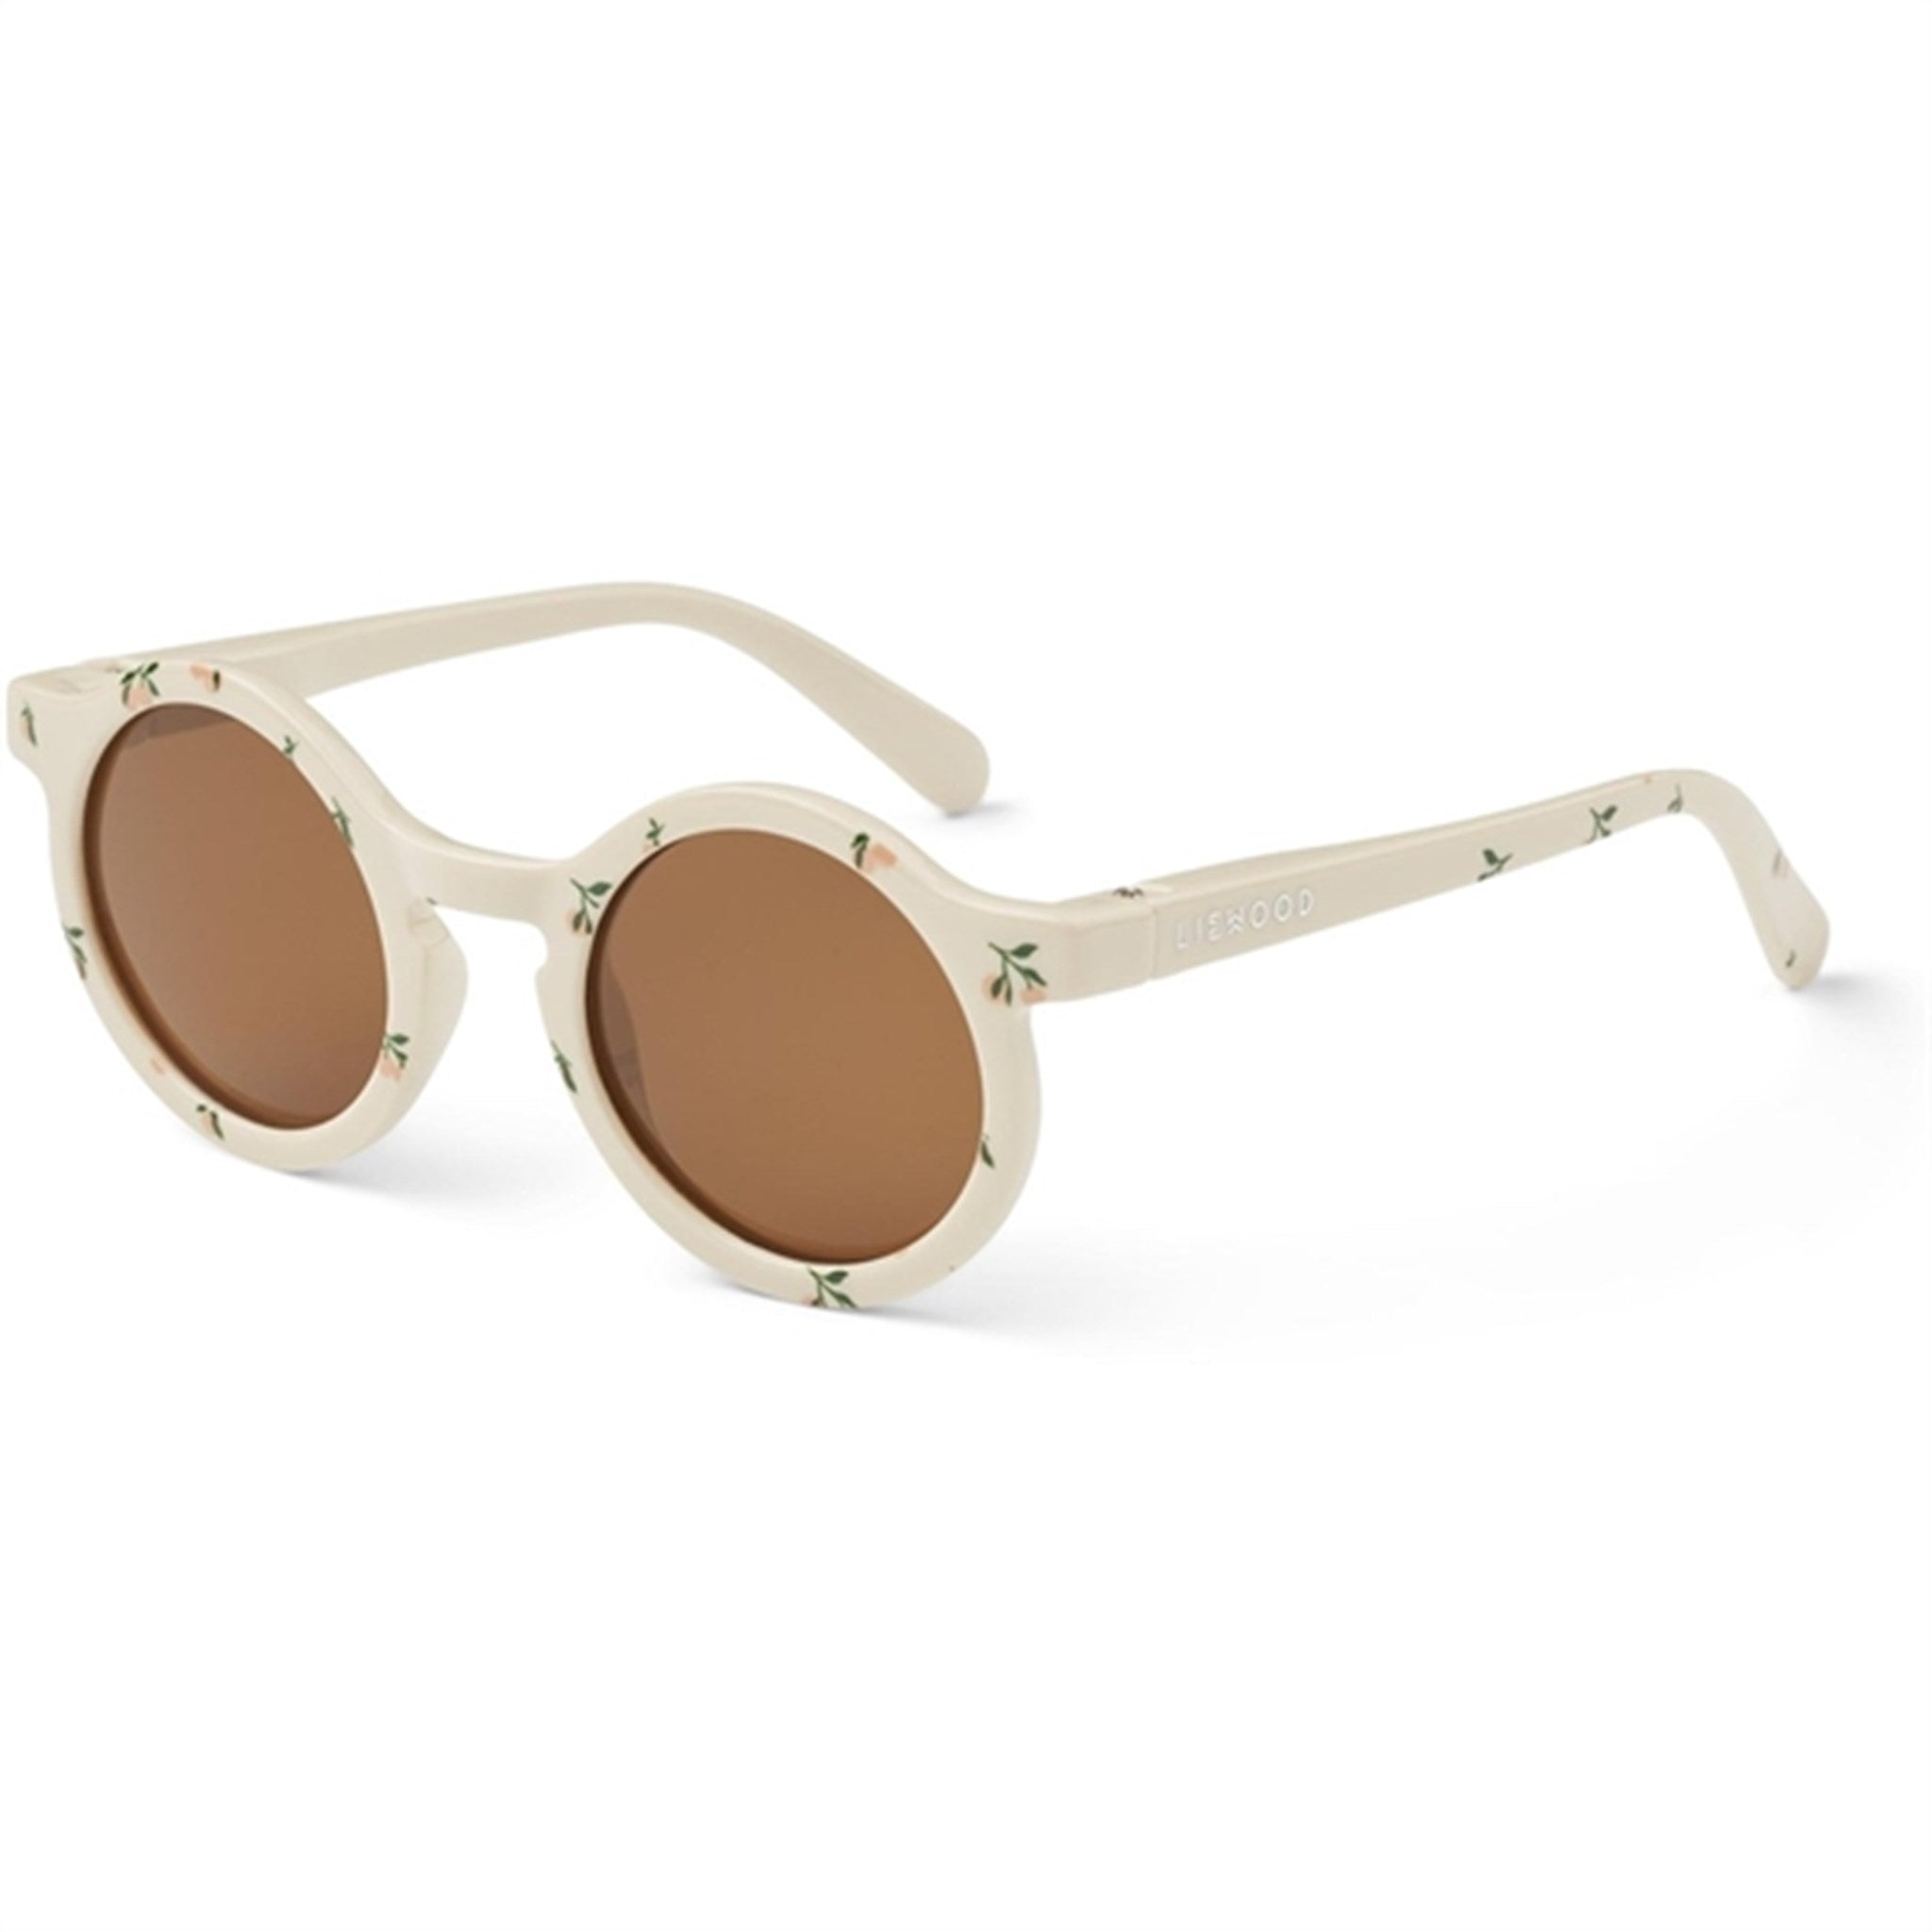 Liewood Darla Sunglasses 1 - 3 Y/O Peach Sea Shell